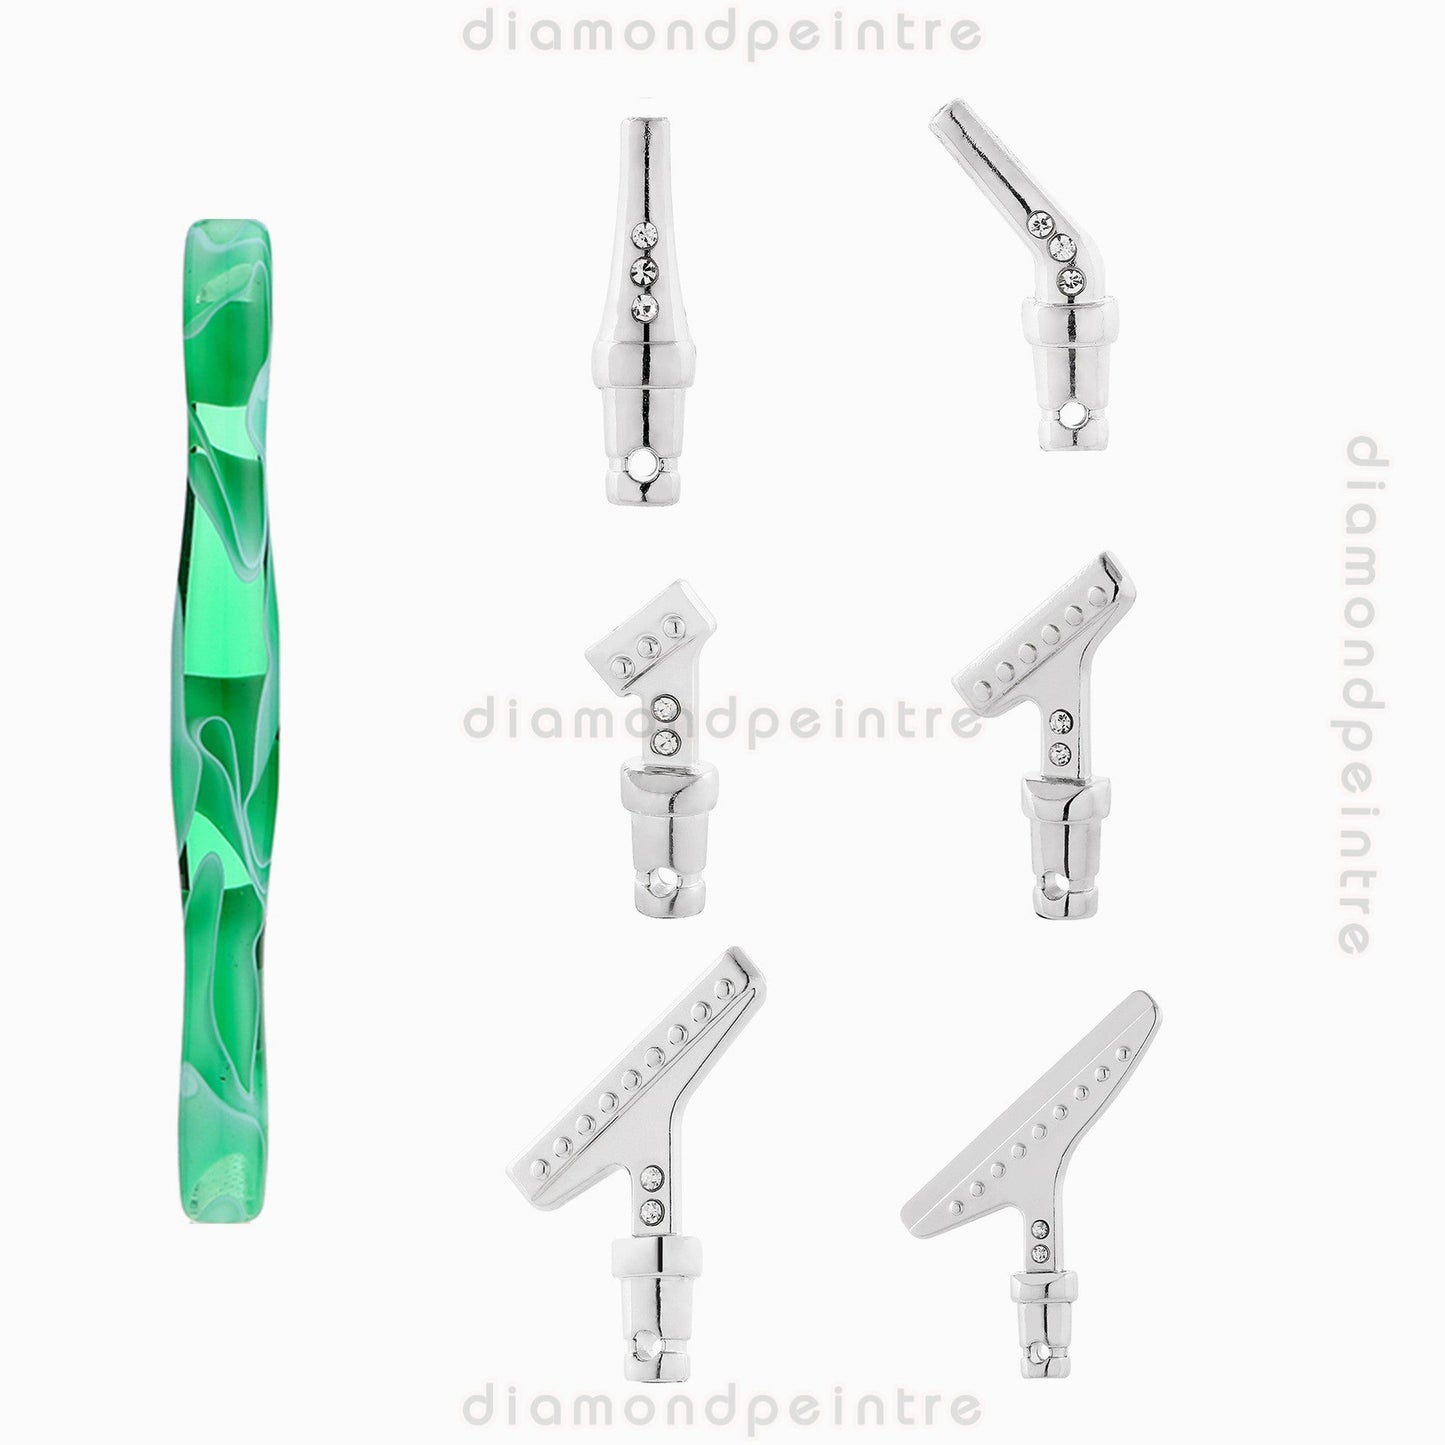 1 DIY diamond drawing point drill pen and 6pcs pen nib | tool